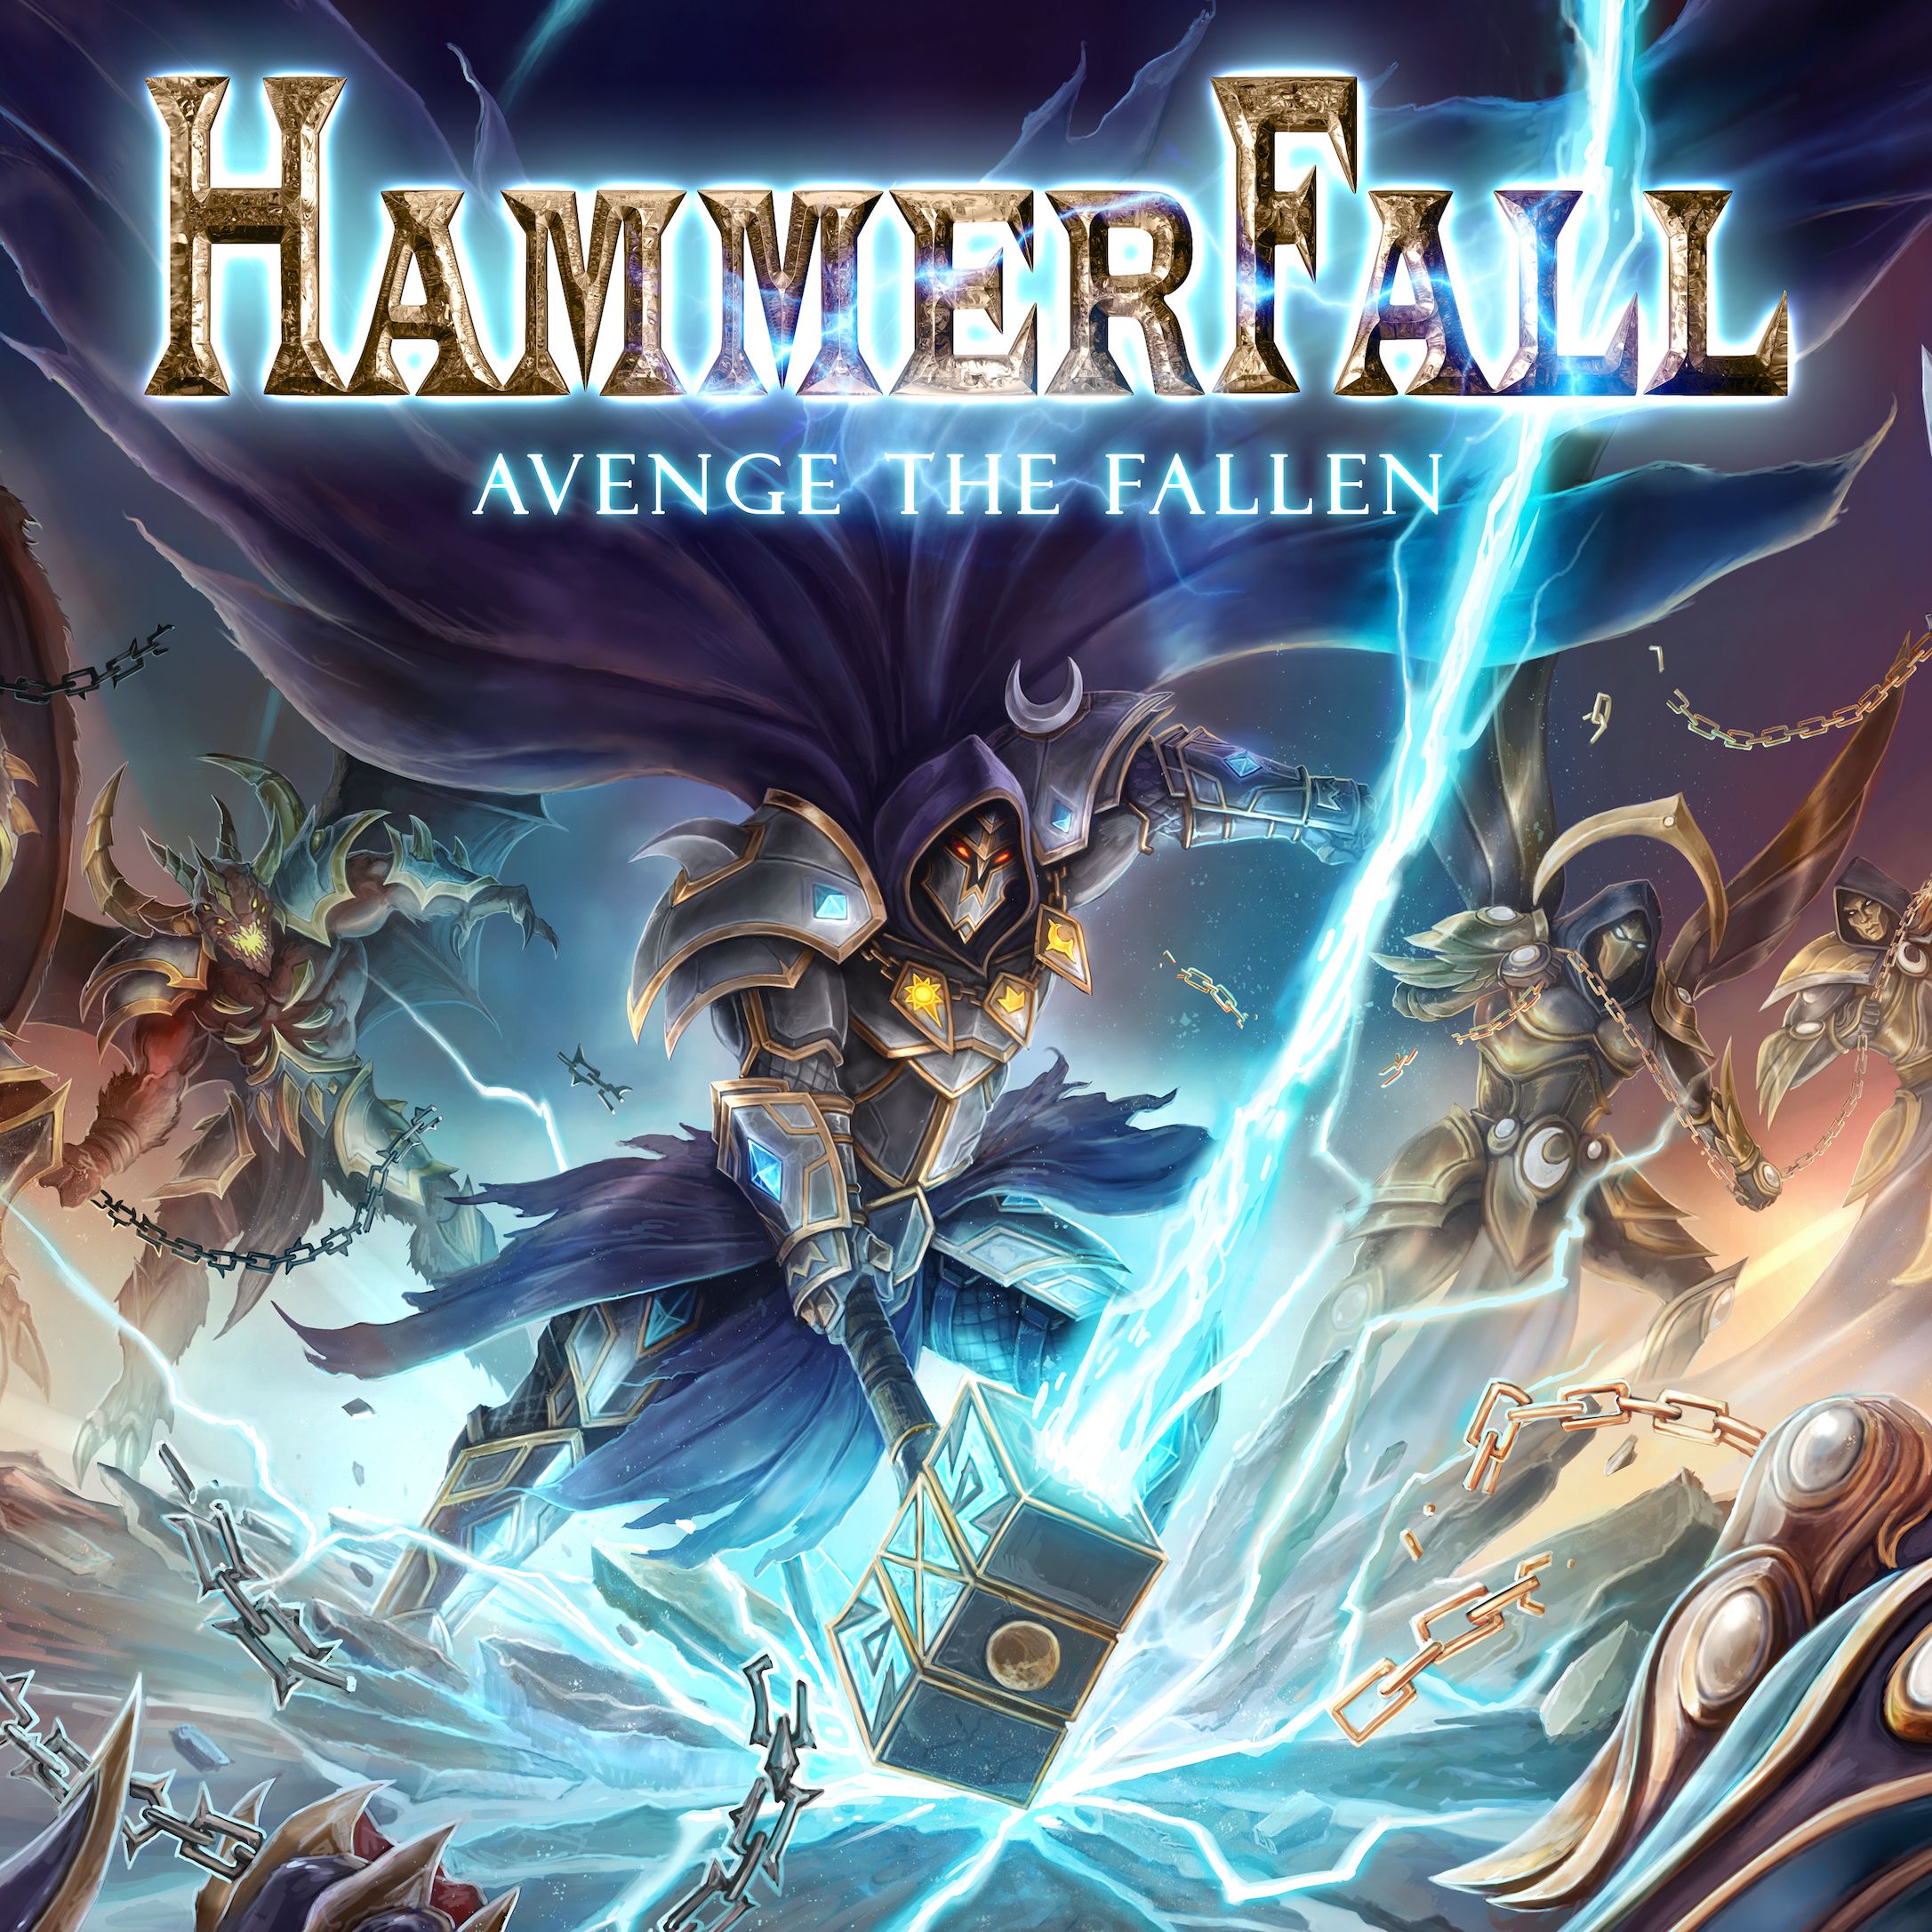 Hammerfall - "Avenge The Fallen"